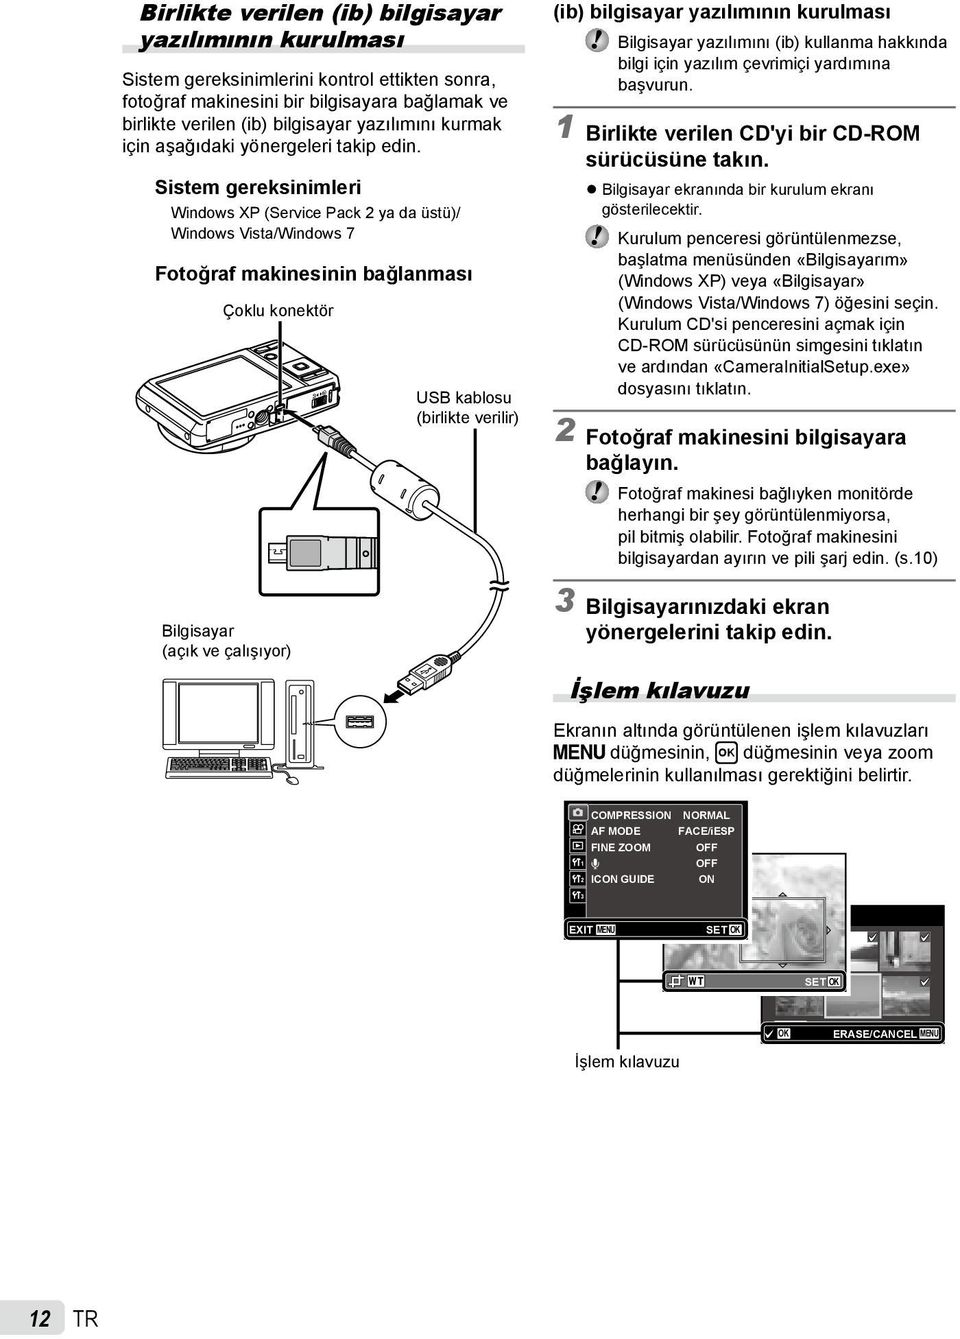 Sistem gereksinimleri Windows XP (Service Pack 2 ya da üstü)/ Windows Vista/Windows 7 Fotoğraf makinesinin bağlanması Çoklu konektör Bilgisayar (açık ve çalışıyor) USB kablosu (birlikte verilir) (ib)